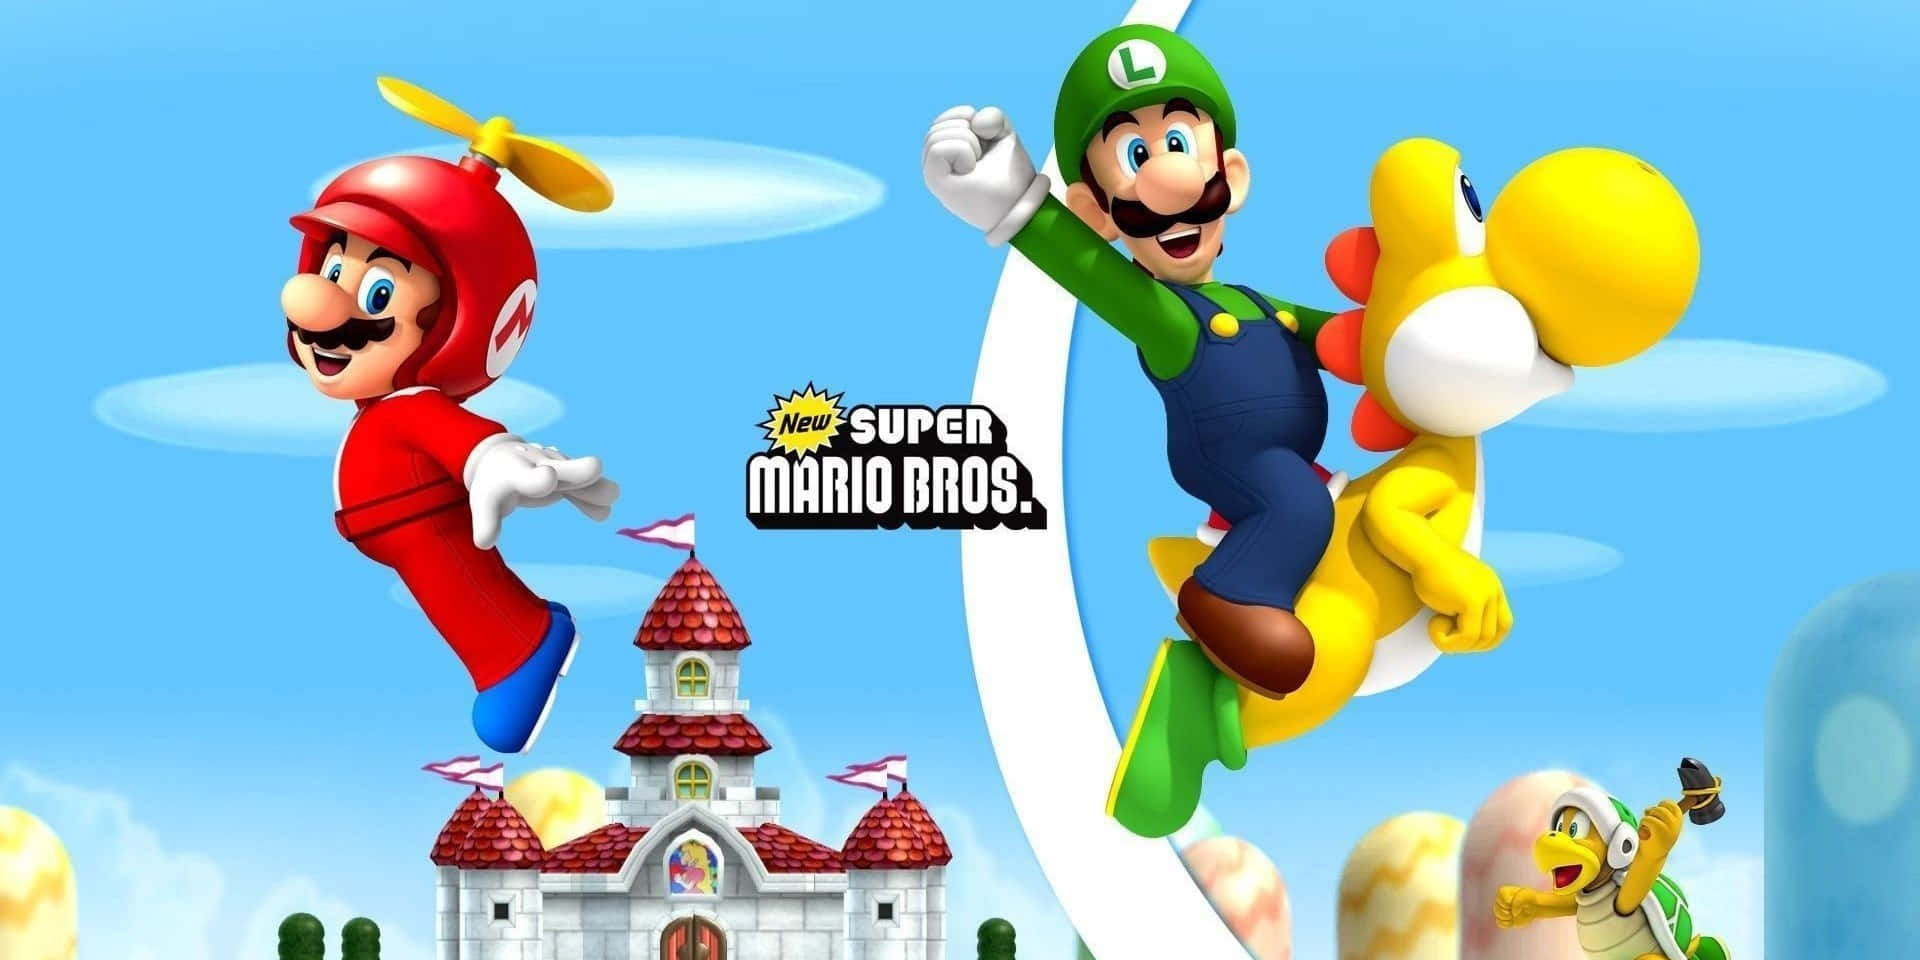 Classic Super Mario Bros Adventure